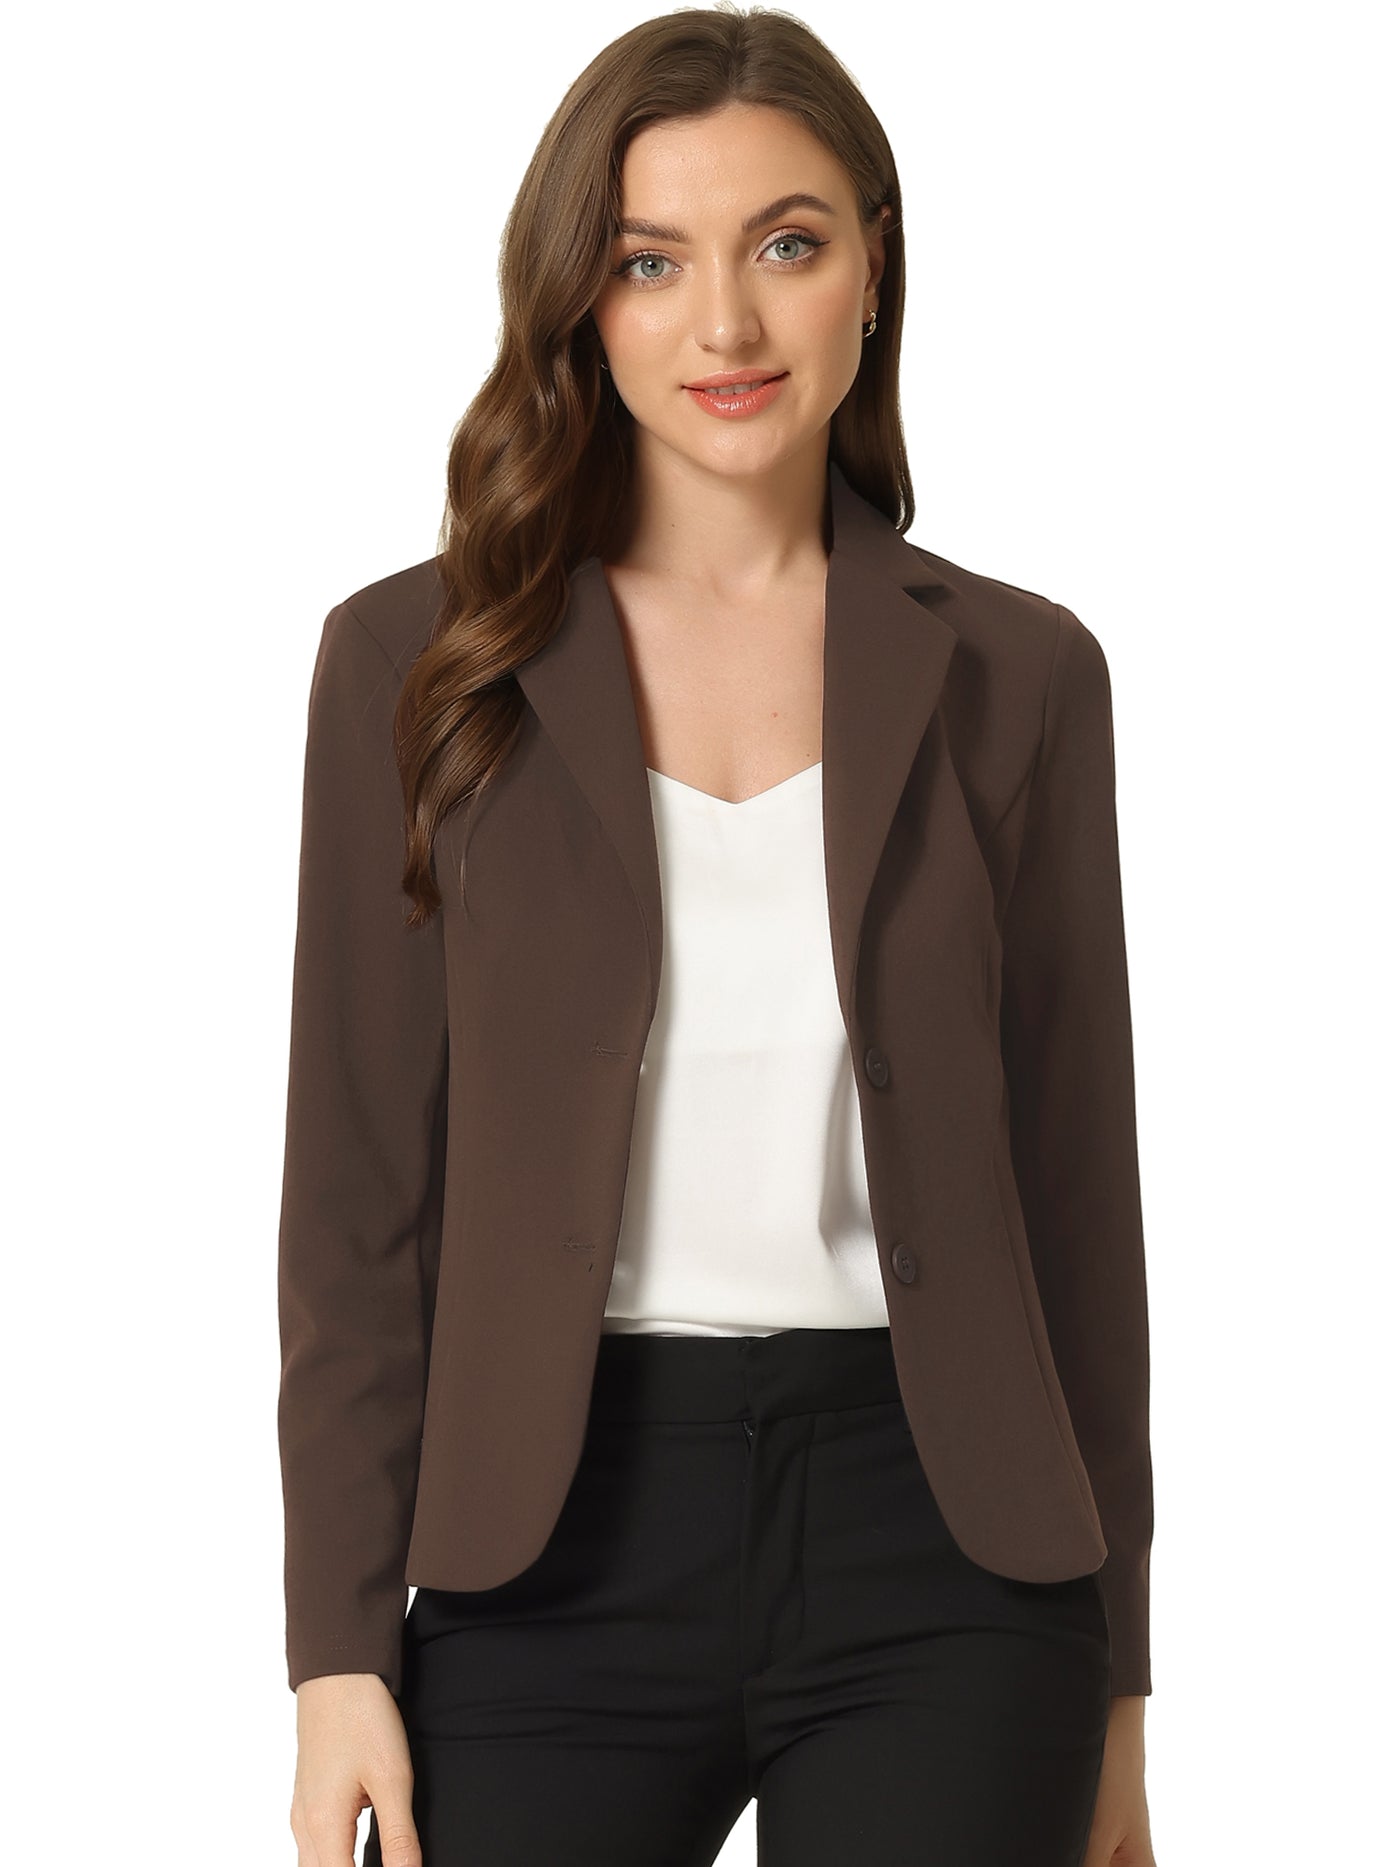 Allegra K Solid Work Office Lapel Collar Stretch Jacket Suit Blazer